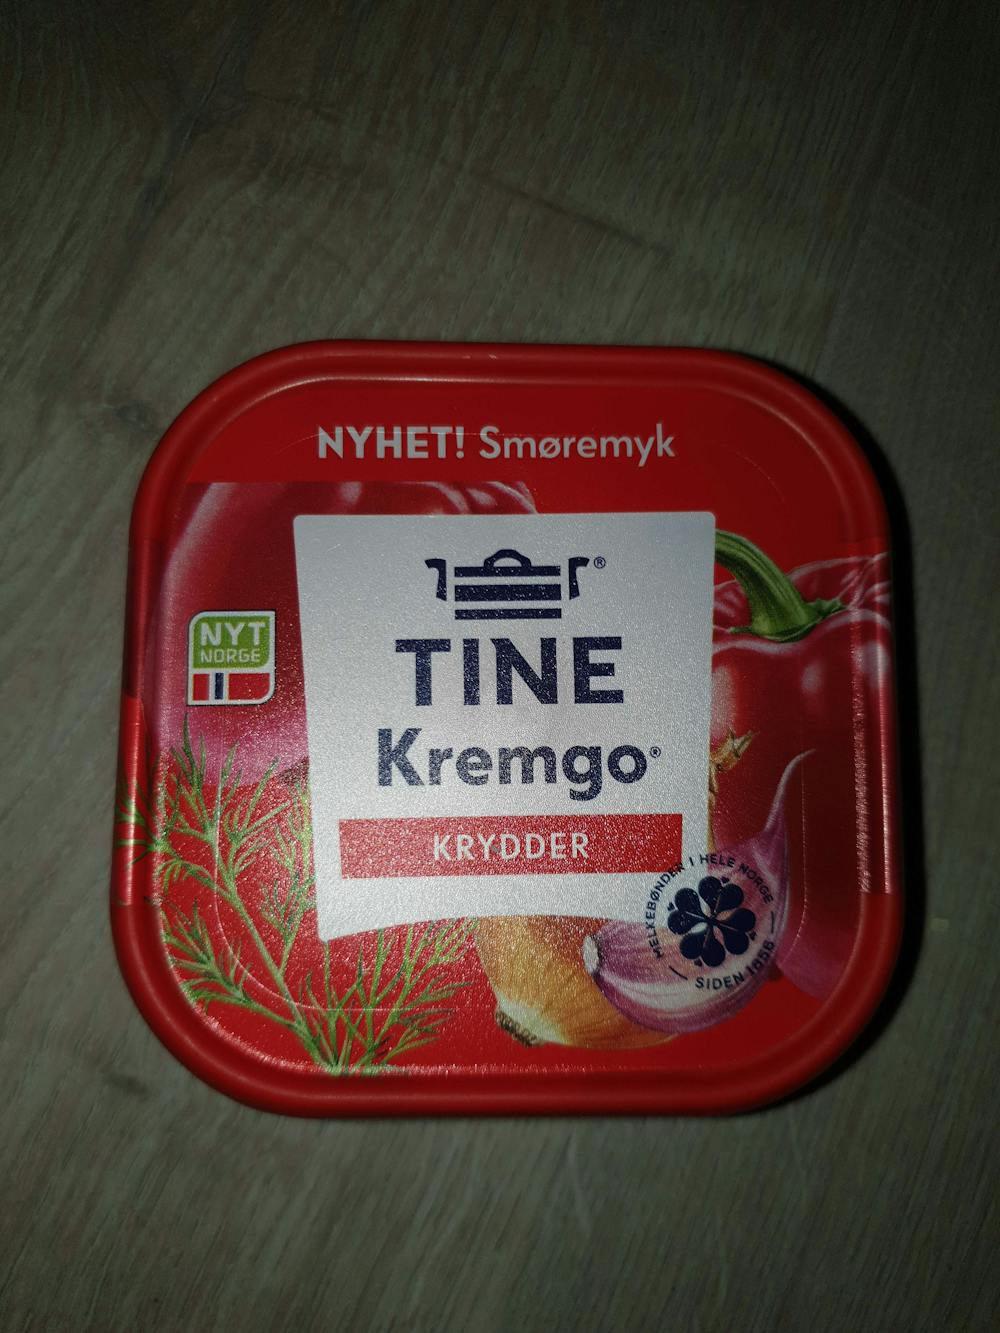 Kremgo' krydder, TINE